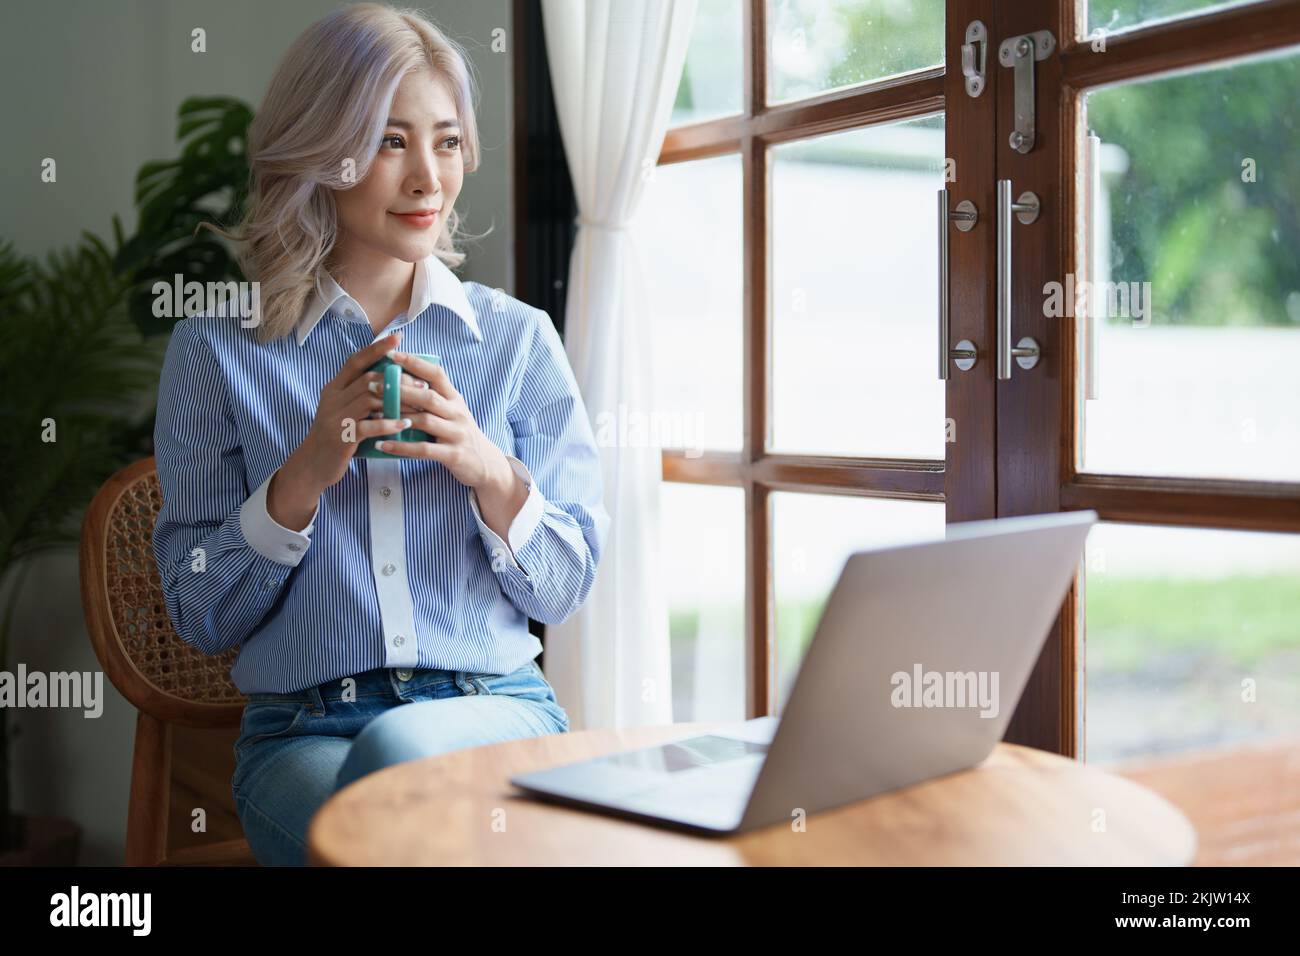 Portrait d'une femme d'affaires asiatique qui boit du café tout en travaillant avec un ordinateur sur son bureau Banque D'Images